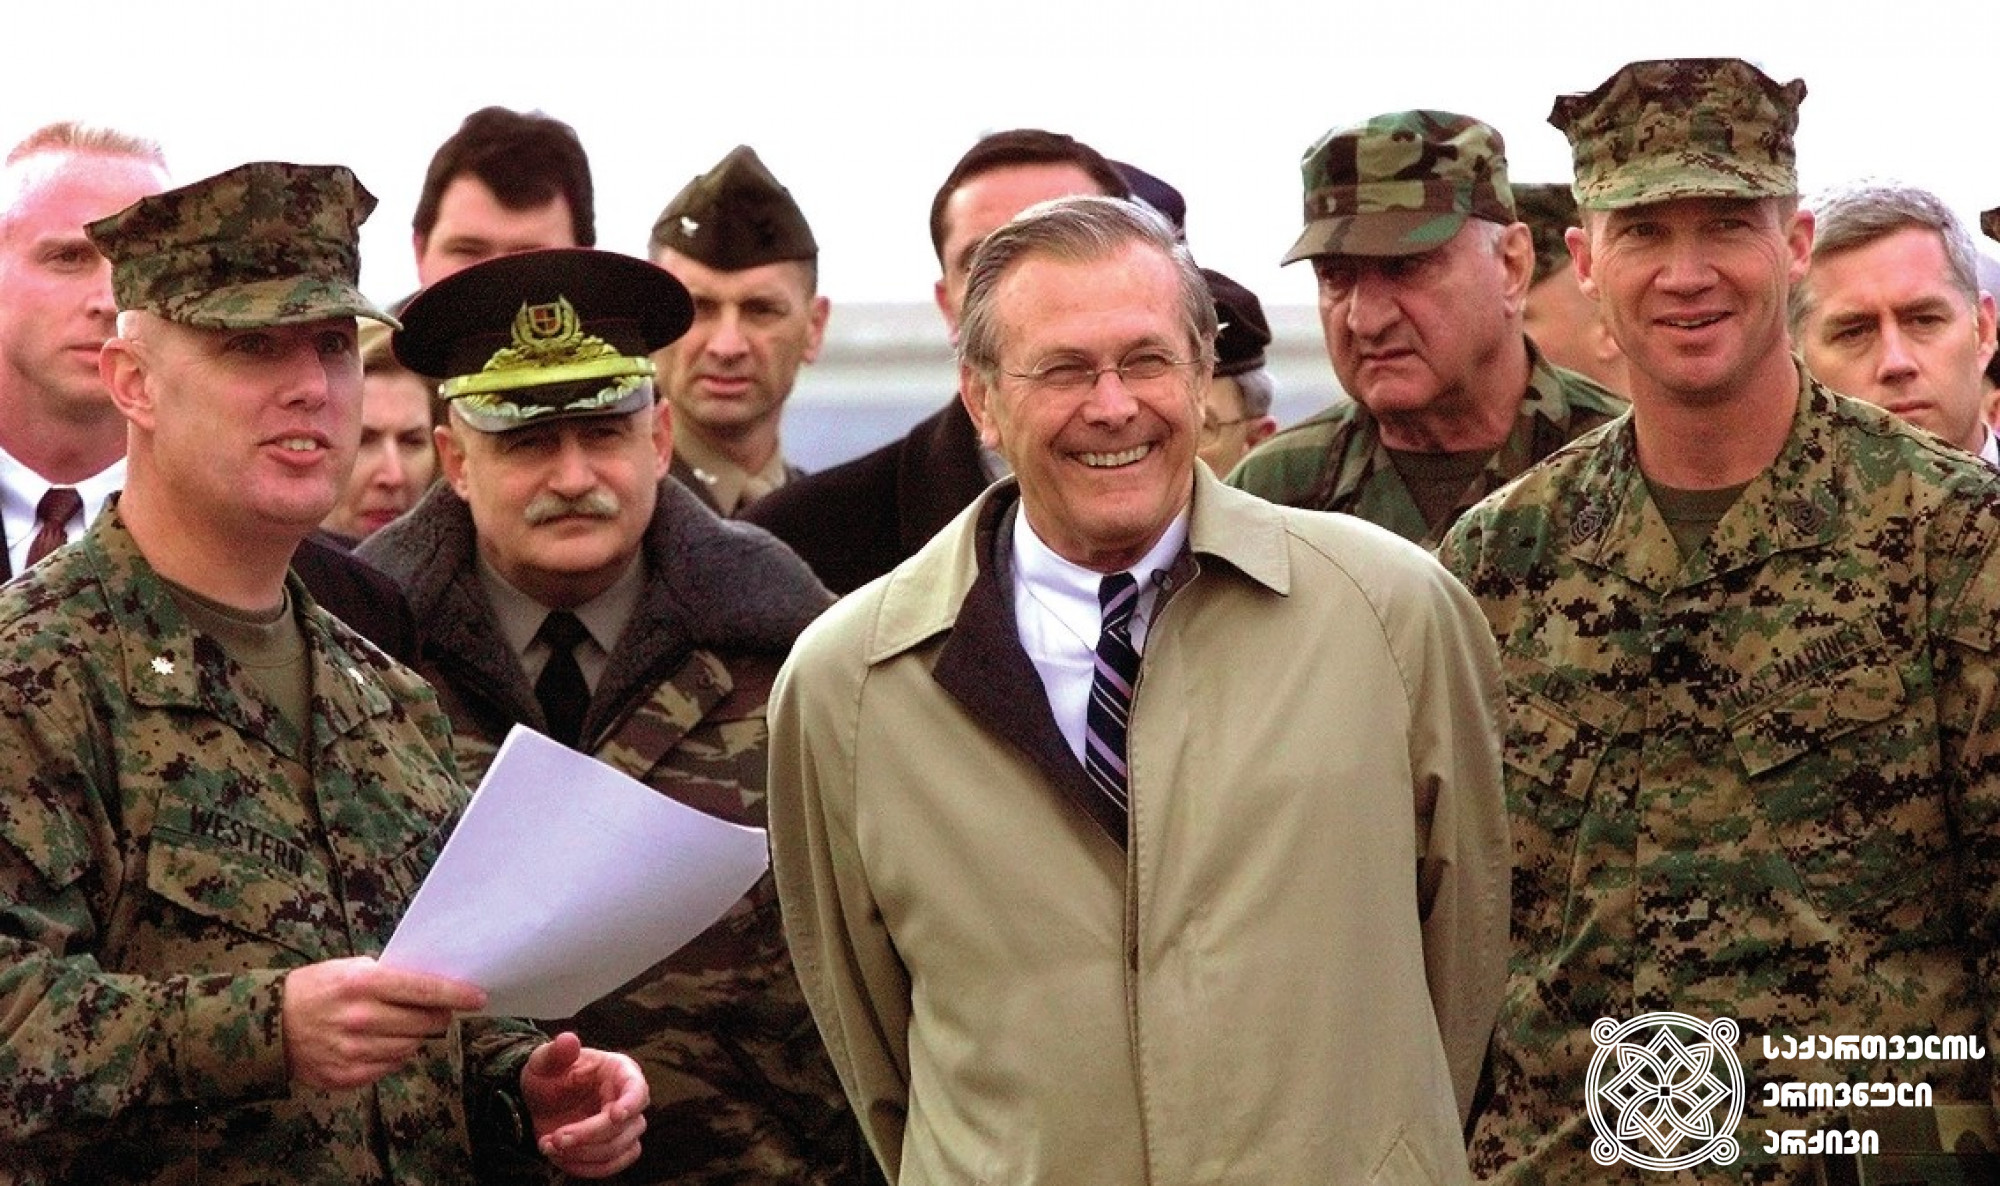 აშშ-ის თავდაცვის მდივანი დონალდ რამსფელდი კრწანისის საწვრთნელ ბაზაზე. 
2003 წლის დეკემბერი. <br>
AP ფოტო/შახ აივაზოვი <br> 

U.S. Secretary of Defense, Donald Rumsfeld, visiting the Krtsanisi training base. 
December 2003. <br>
AP Photo/Shakh Aivazov